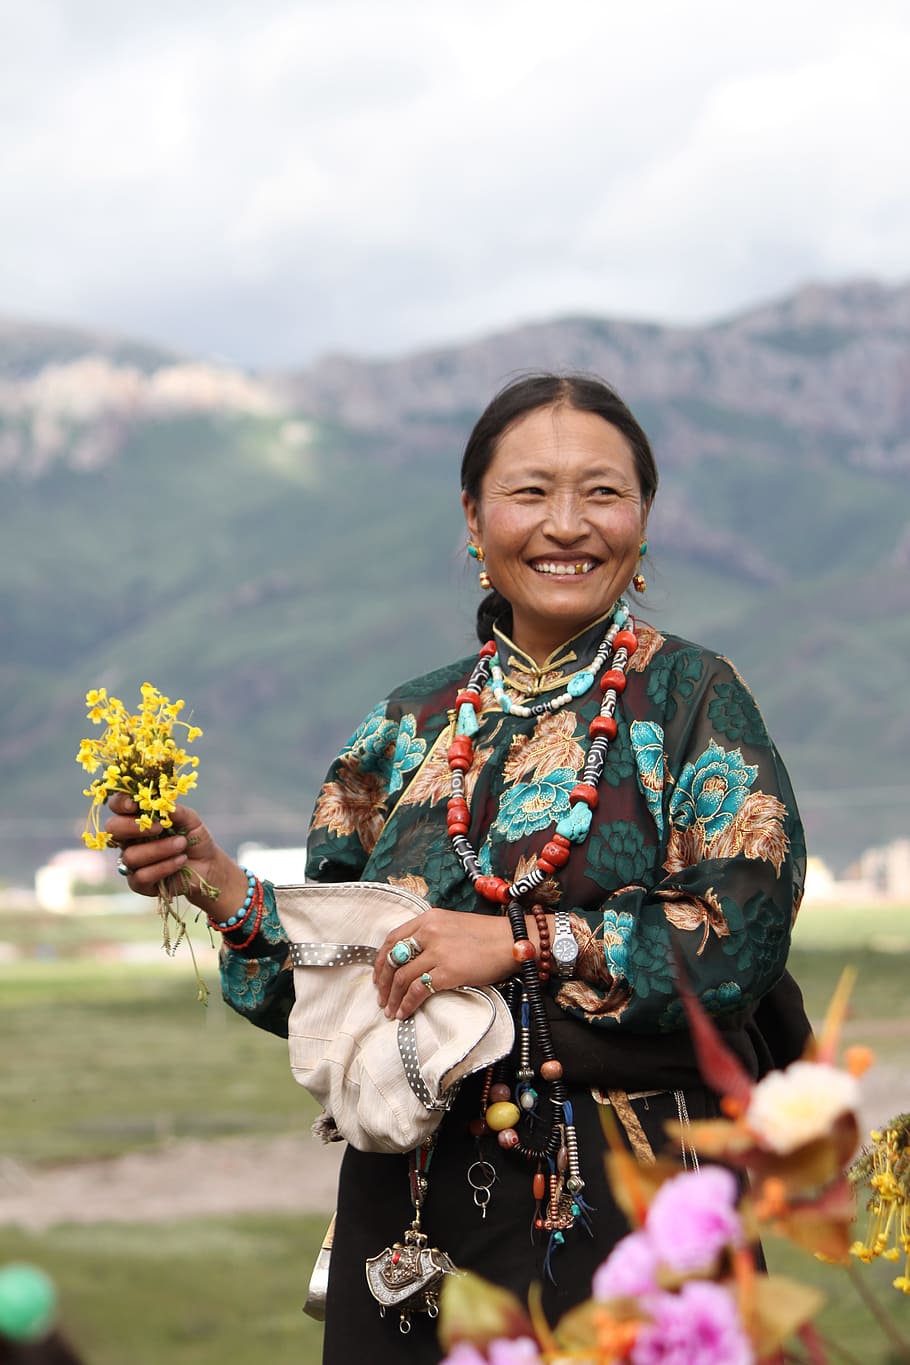 personagem, tibet étnica, tibet, étnica, mão segurando flores, ms, apenas mulheres, adultos apenas, uma pessoa, montanha